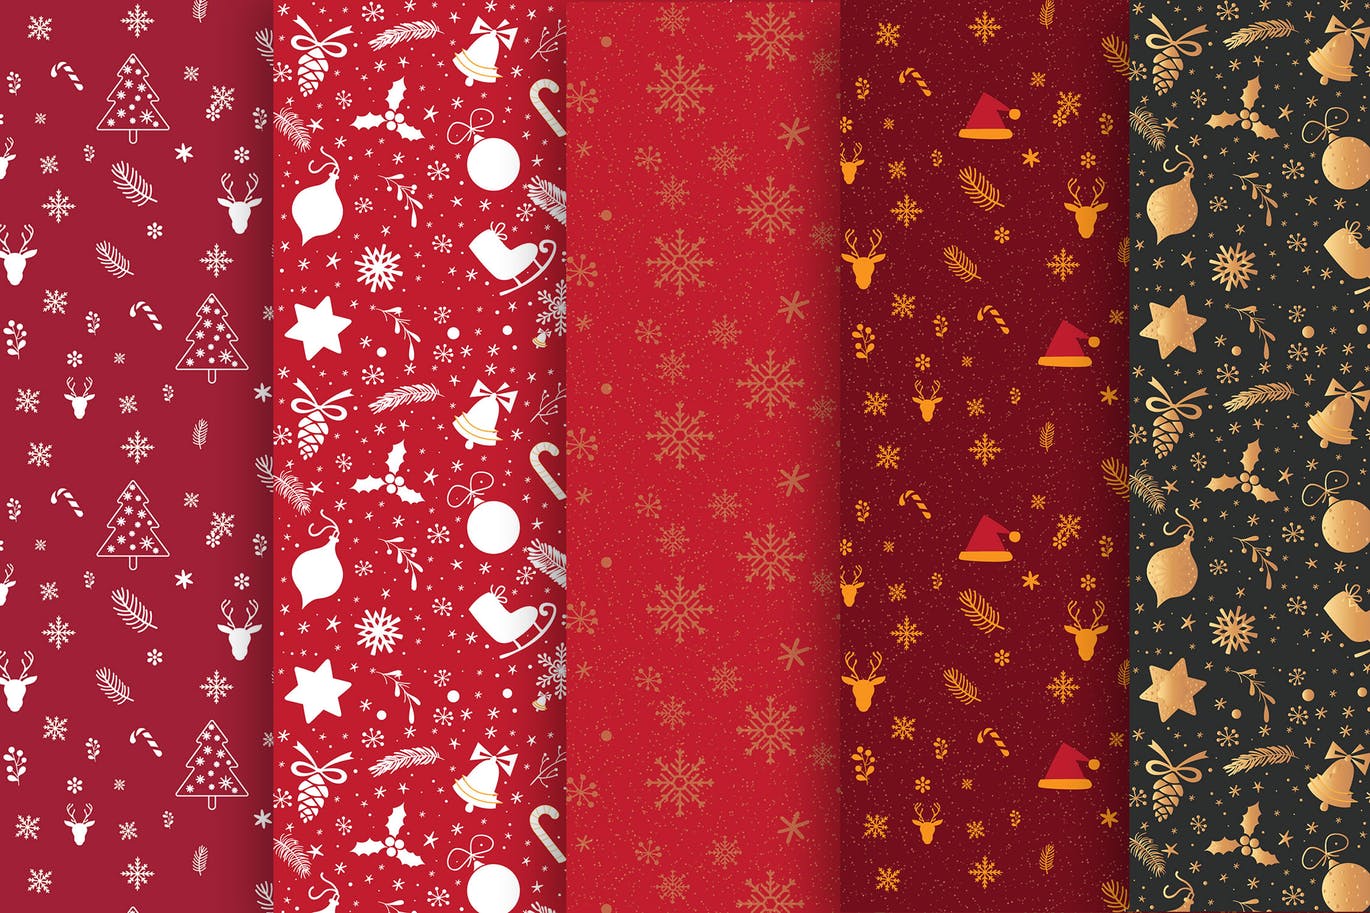 圣诞节元素手绘图案无缝背景素材包 Christmas Pattern Collection插图